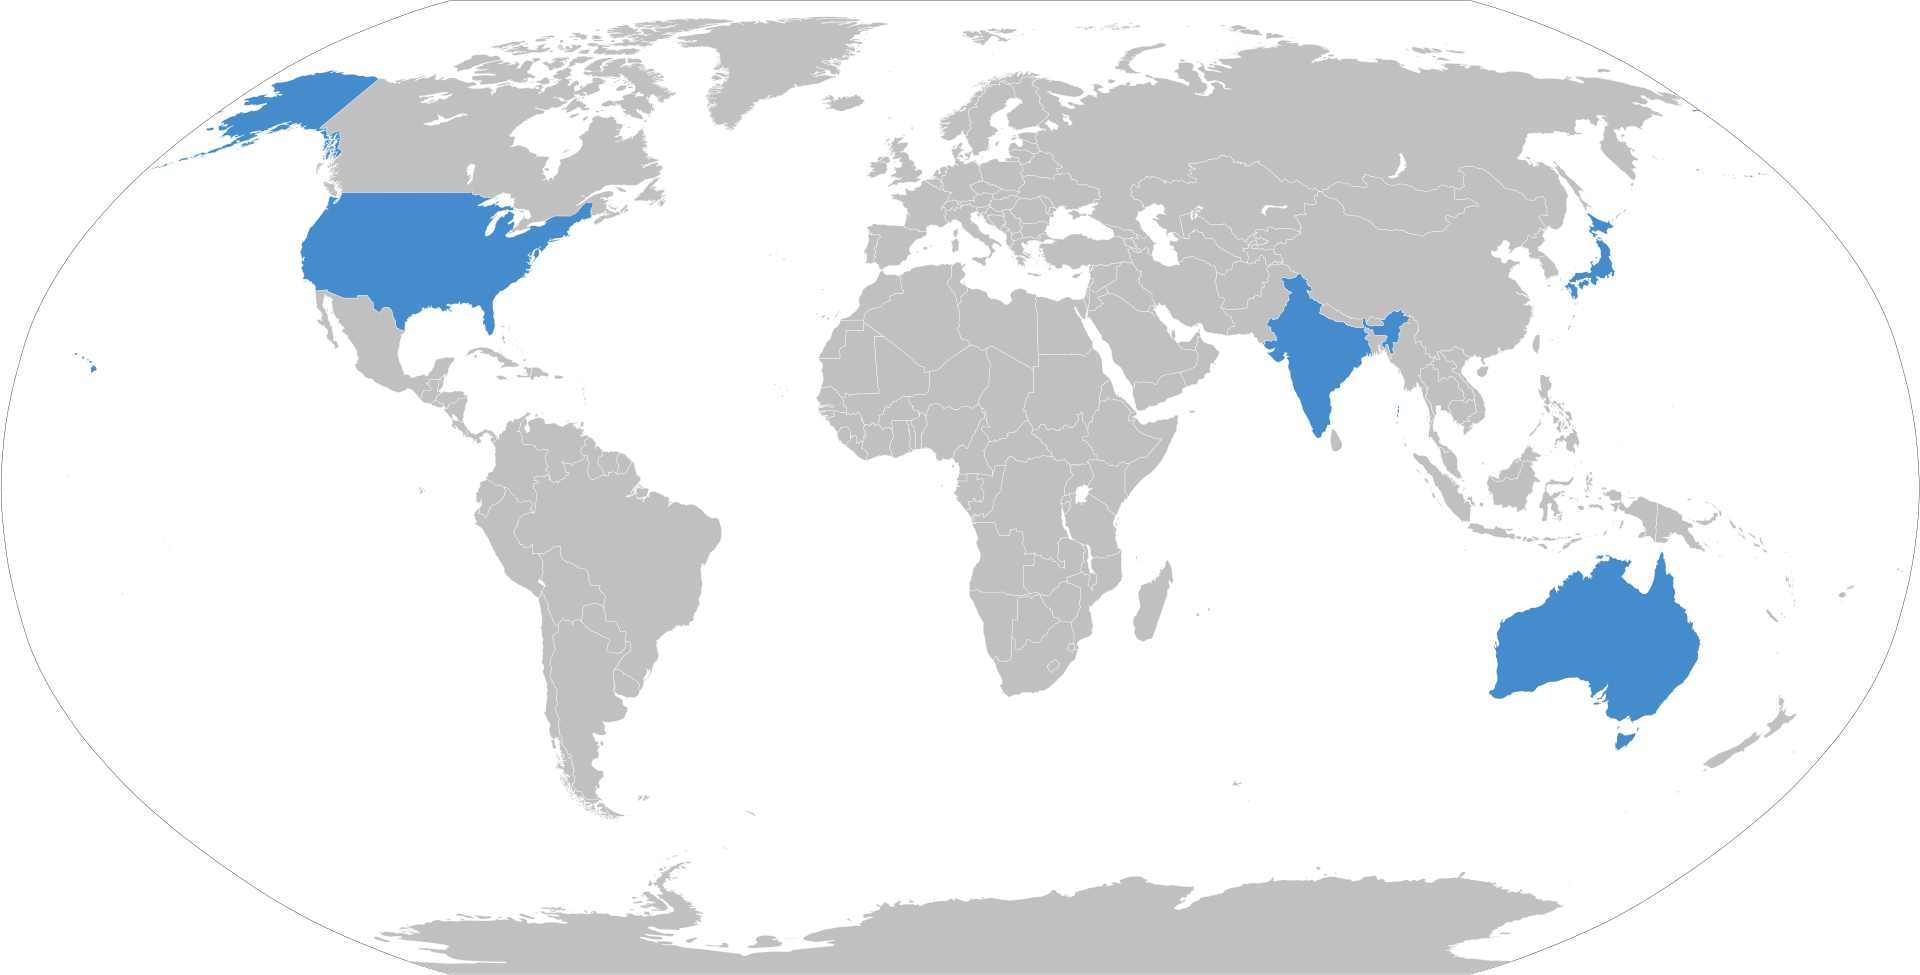 Австралия, Индия, Япония и США выделены синим цветом